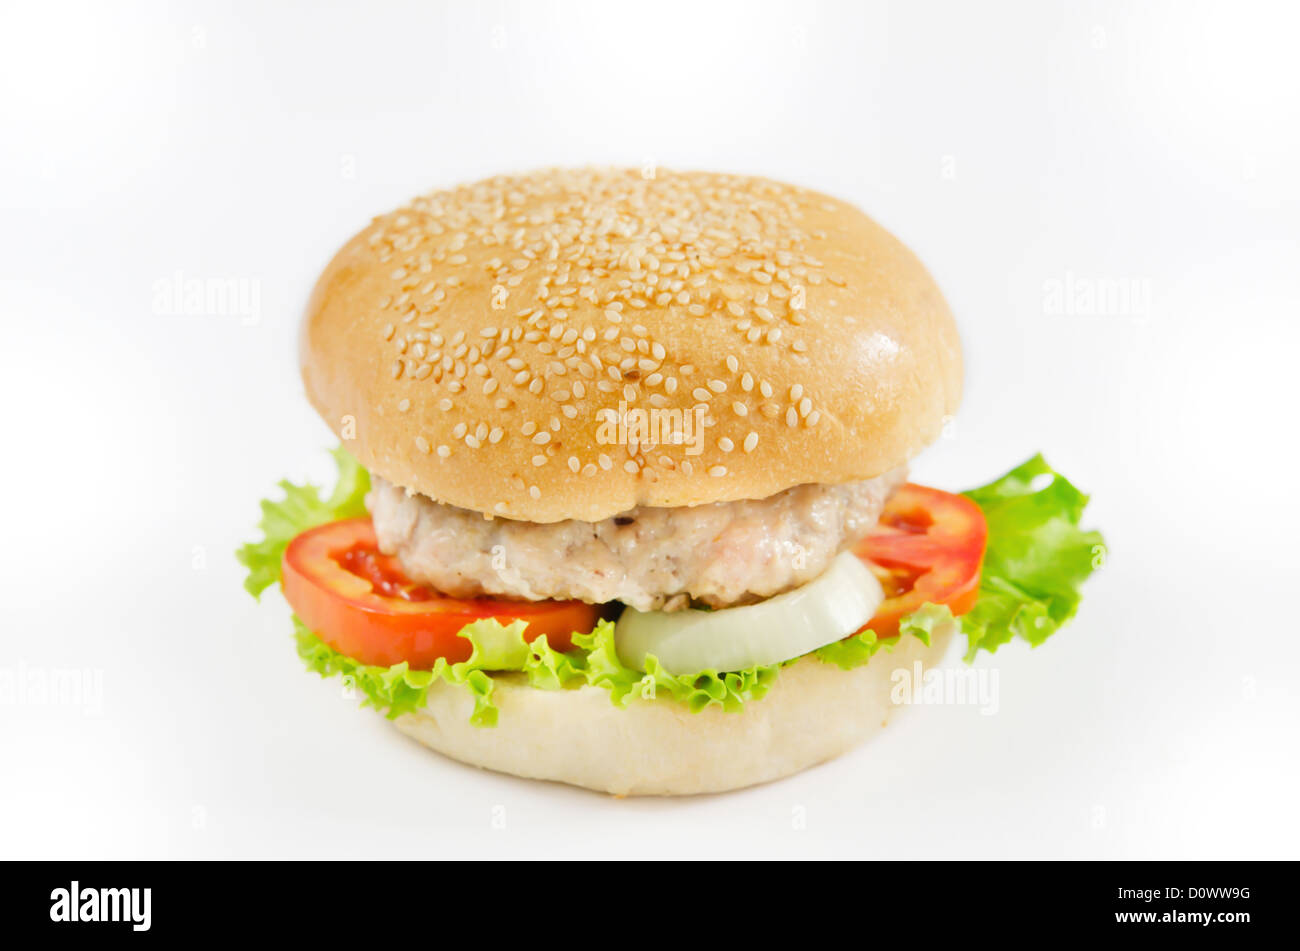 single burger on white background Stock Photo